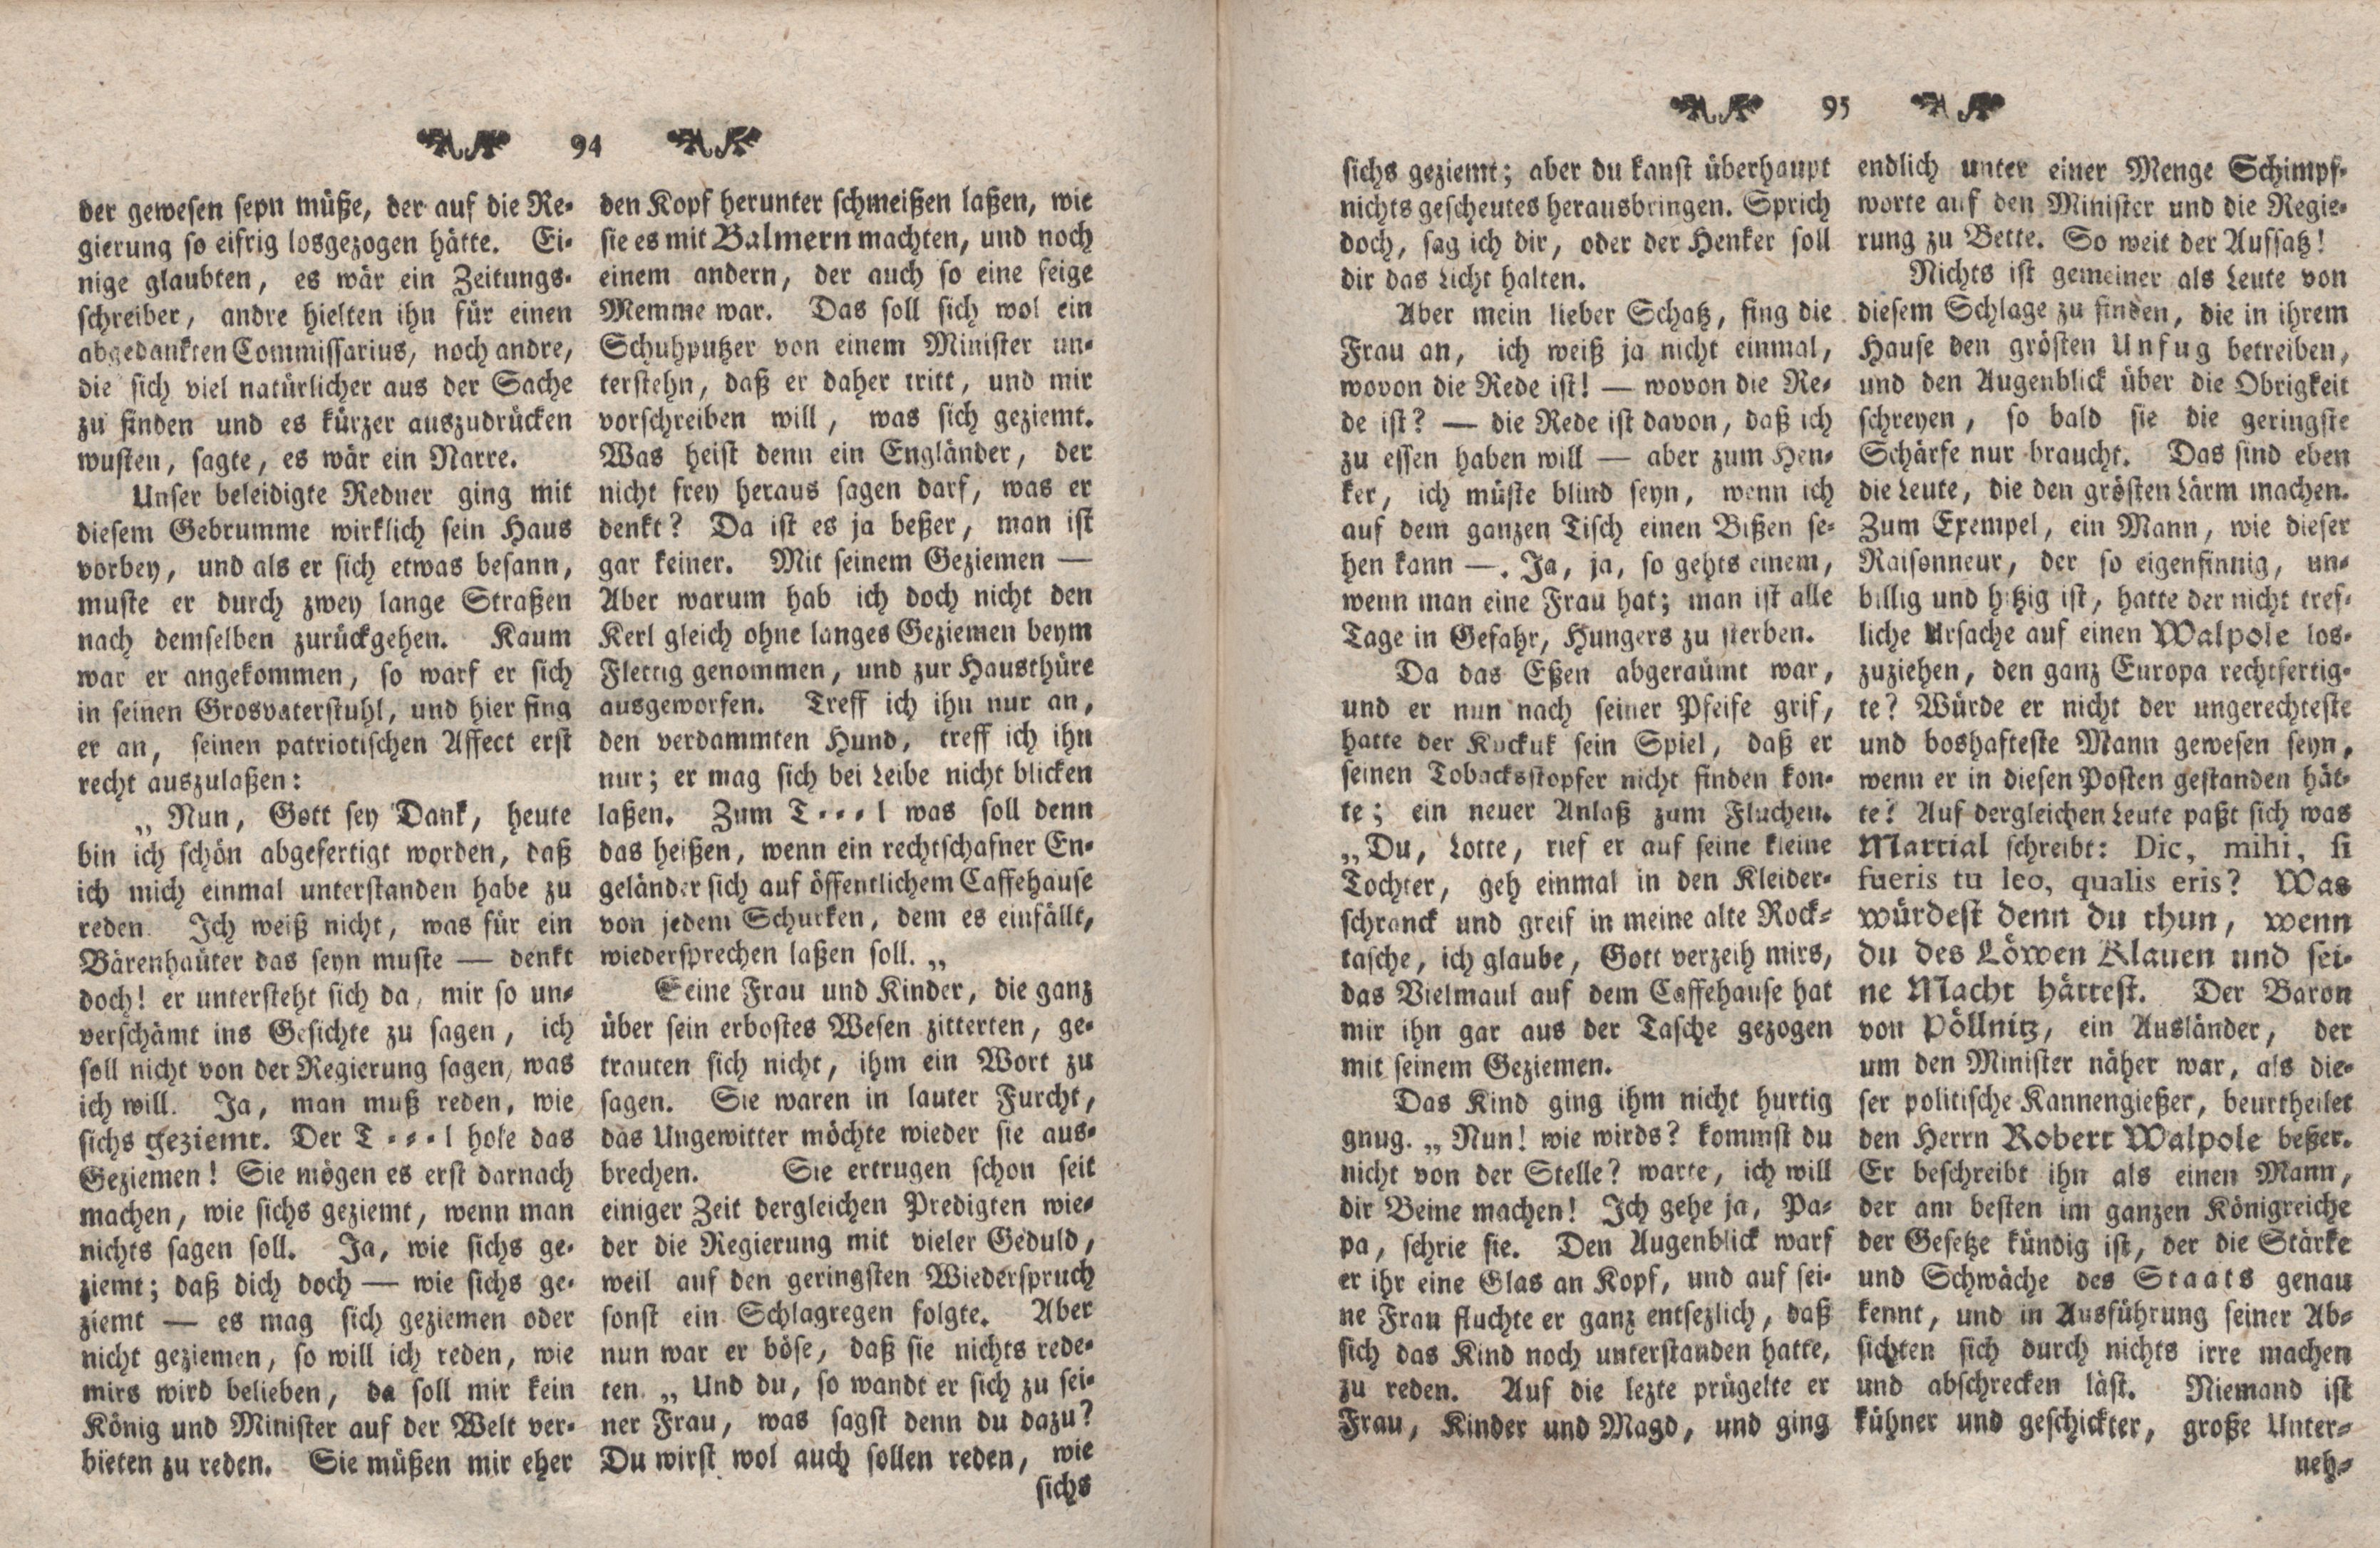 Gelehrte Beyträge zu den Rigischen Anzeigen 1766 (1766) | 48. (94-95) Main body of text